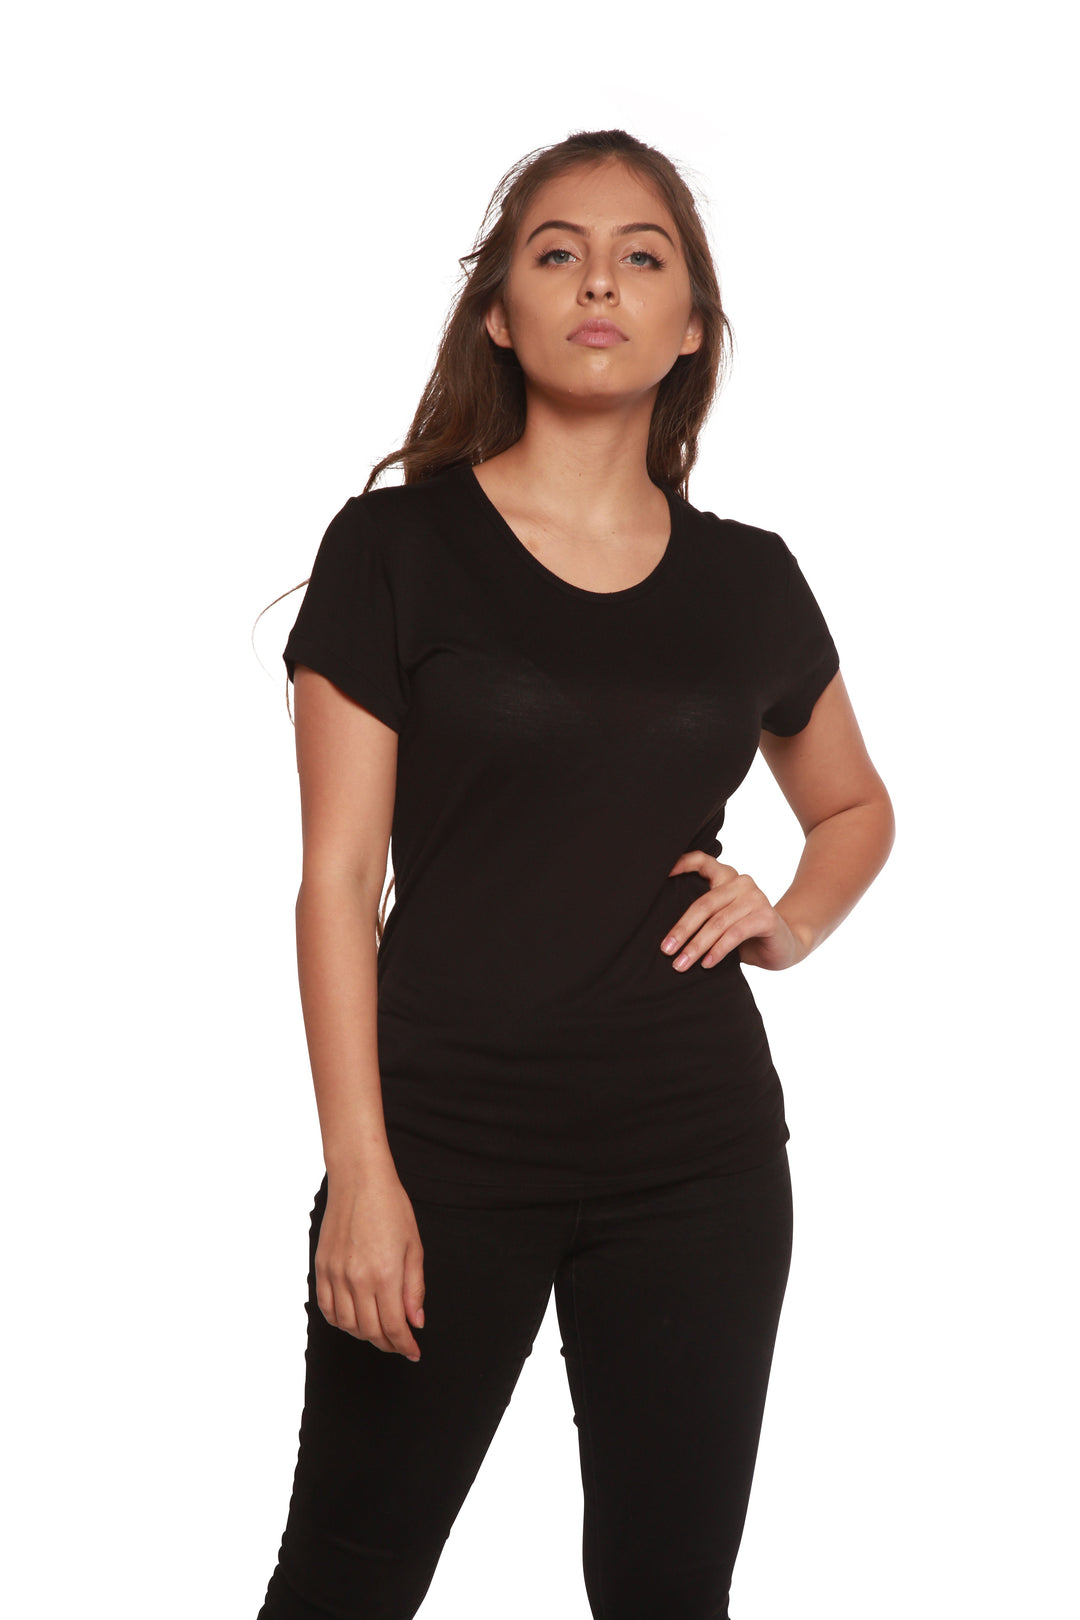 Spun Bamboo Women's 100% Bamboo Viscose Scoop Neck Short Sleeve T-Shirt Black